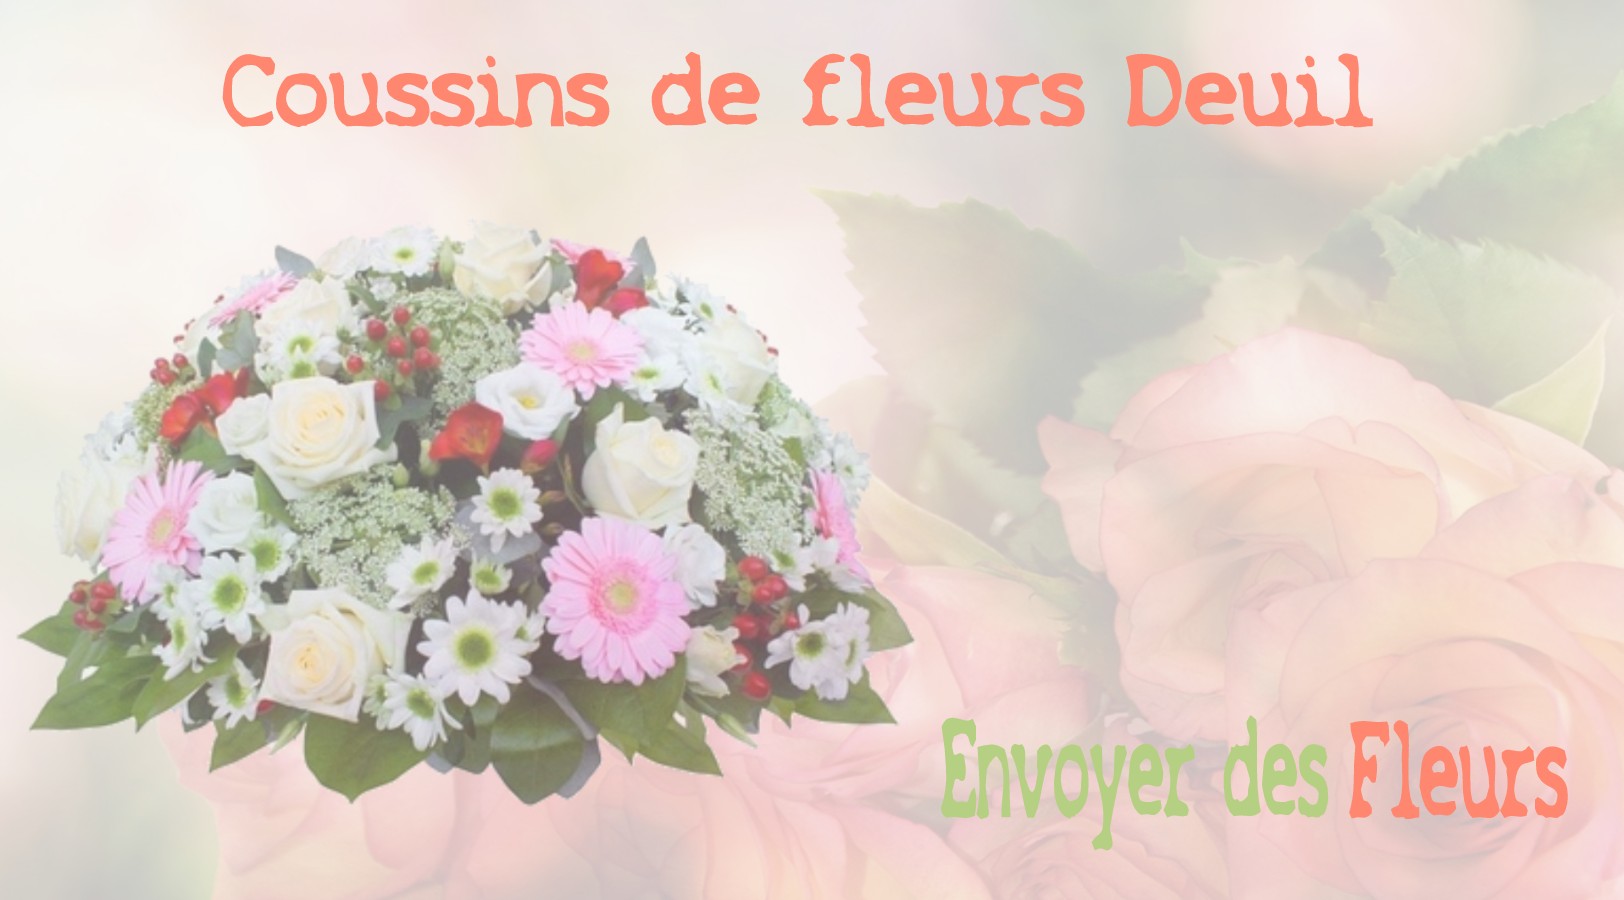 Les coussins de fleurs deuil - LIVRAISON FLEURS DEUIL A MEIGNEUX 77